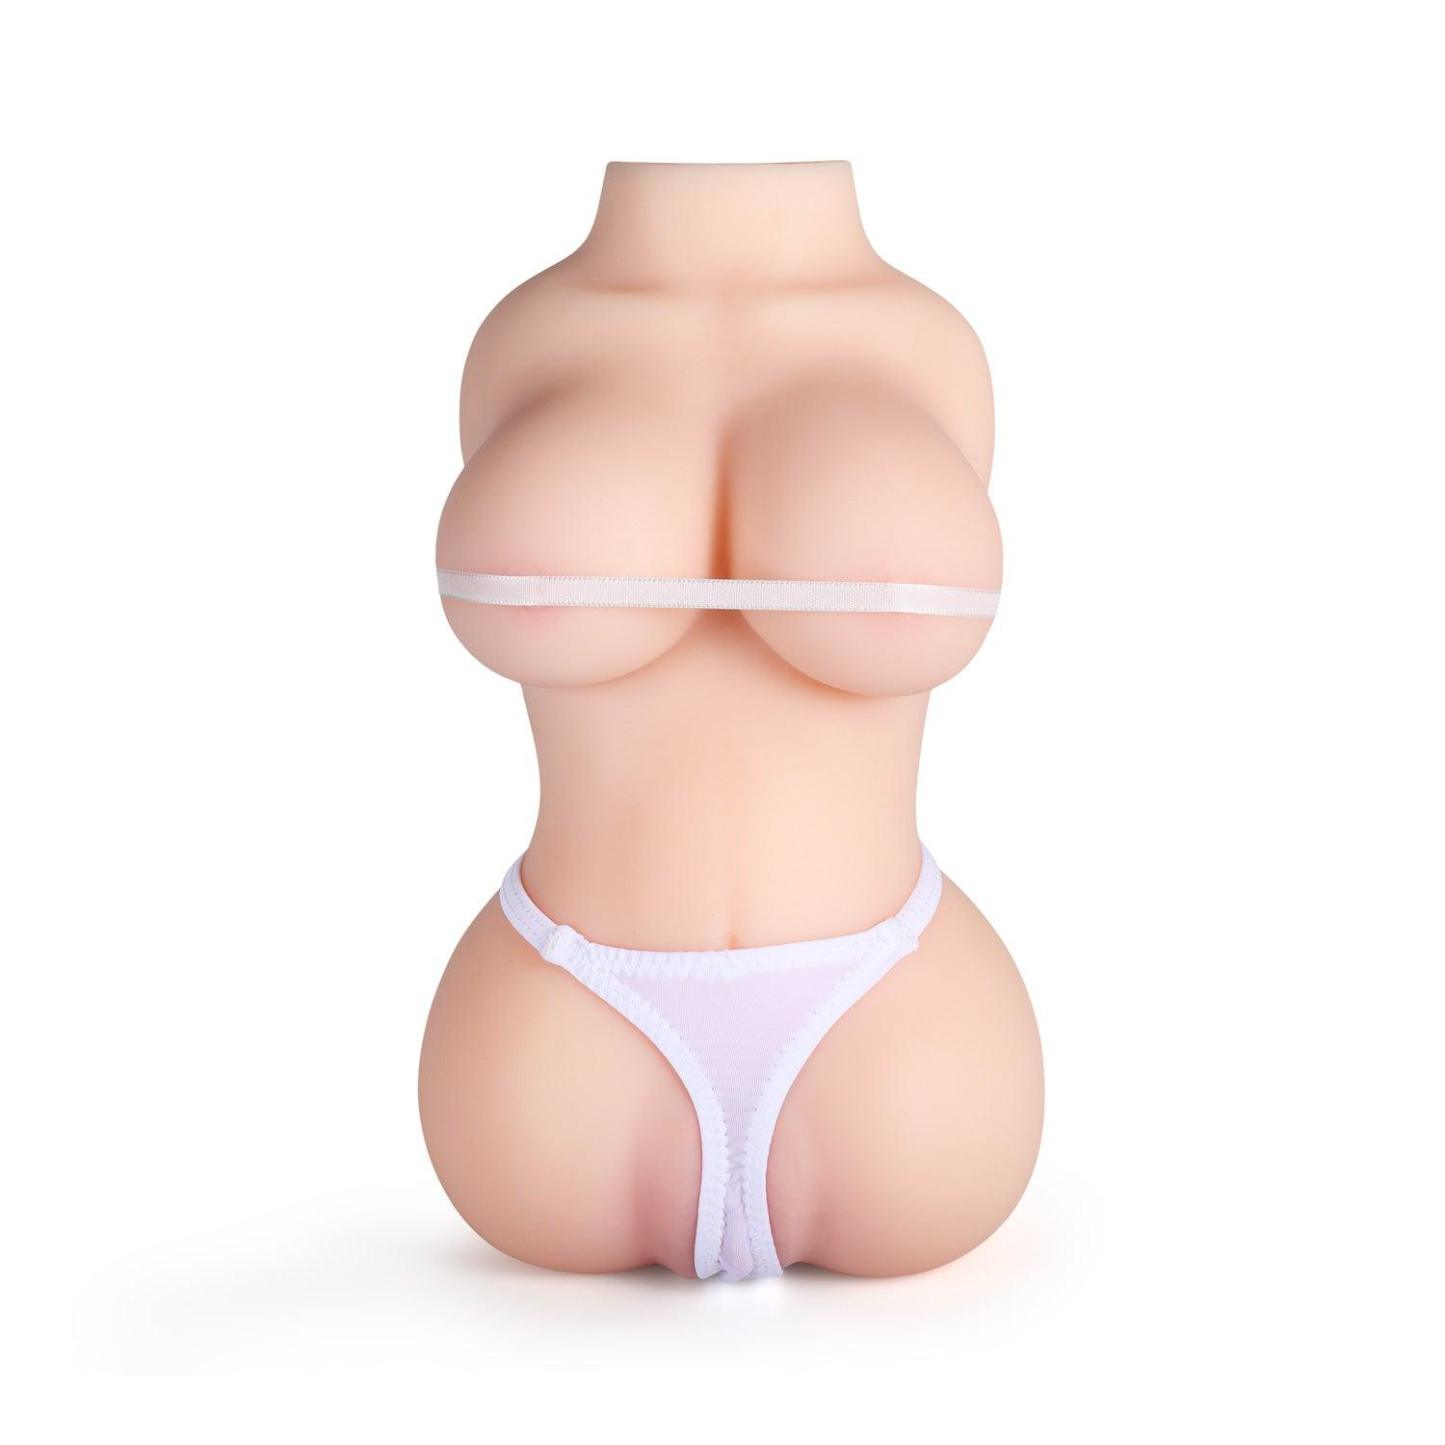 Sex Doll Torso Male Masturbator Pocket Pussy Ass-BestGSpot